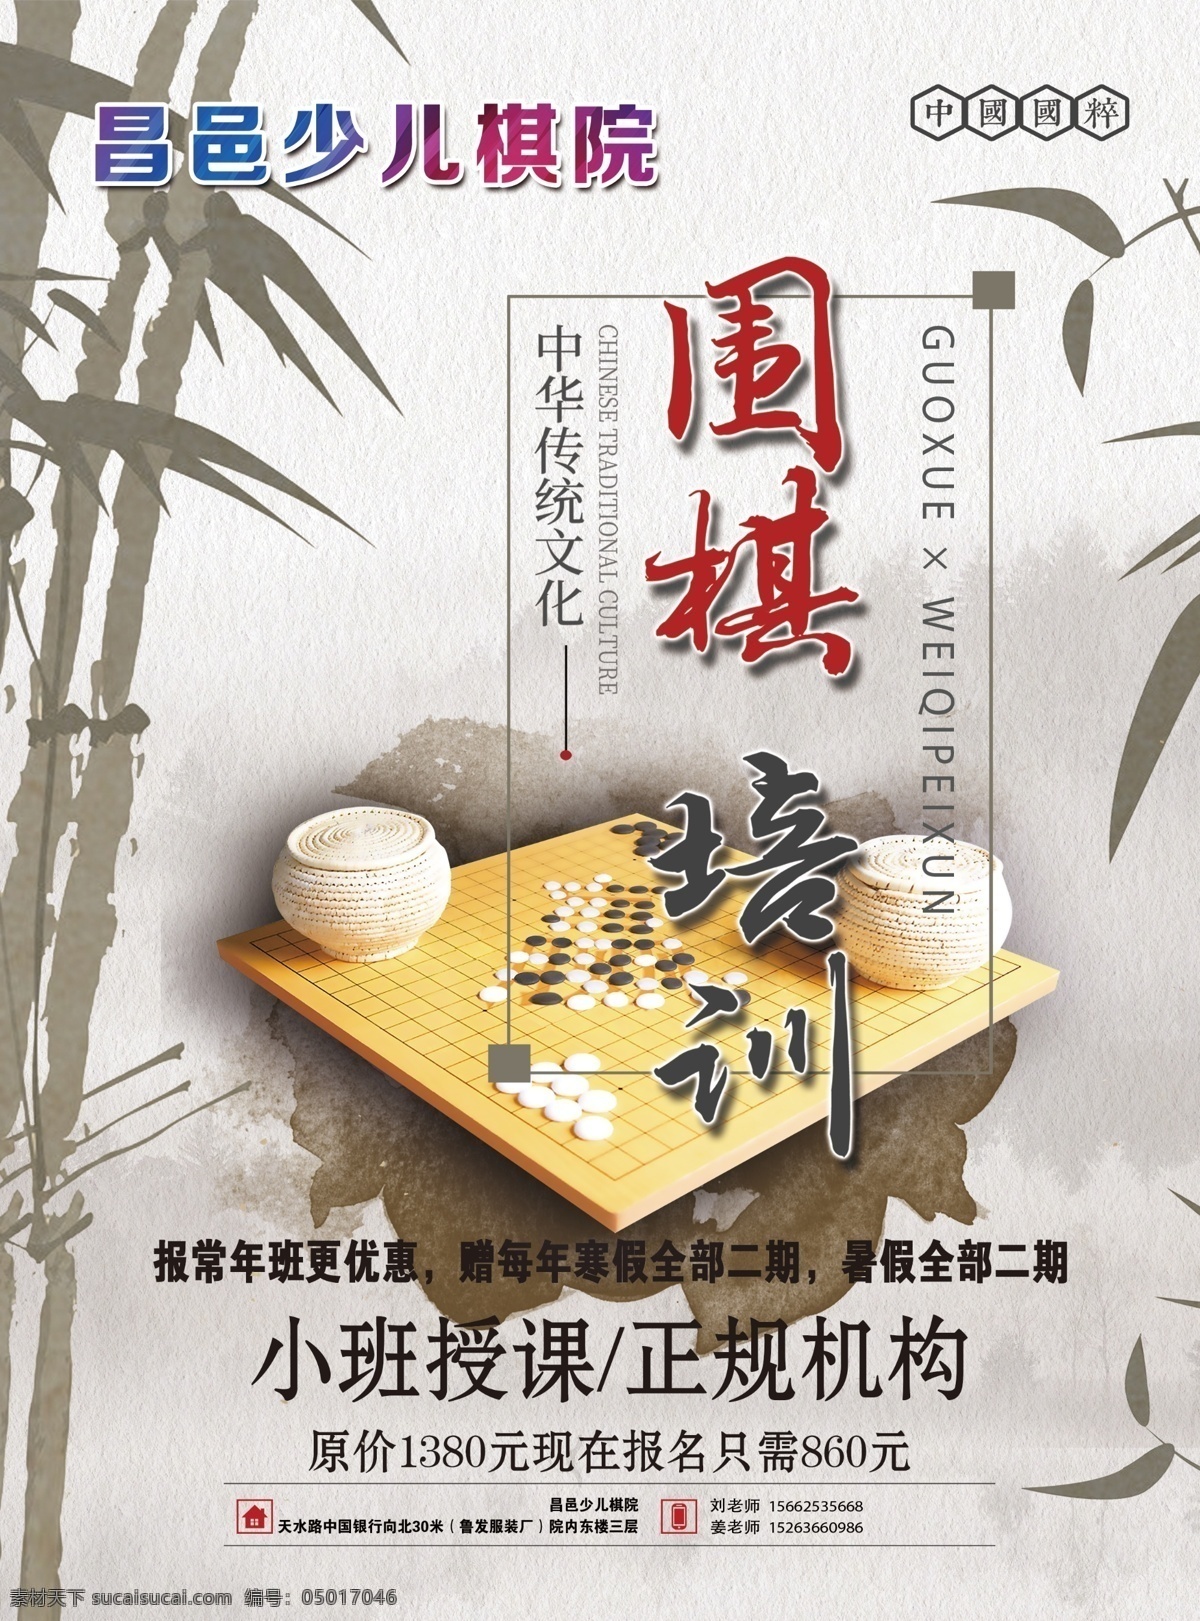 围棋培训 中国风 水墨画 暑假班 传统文化